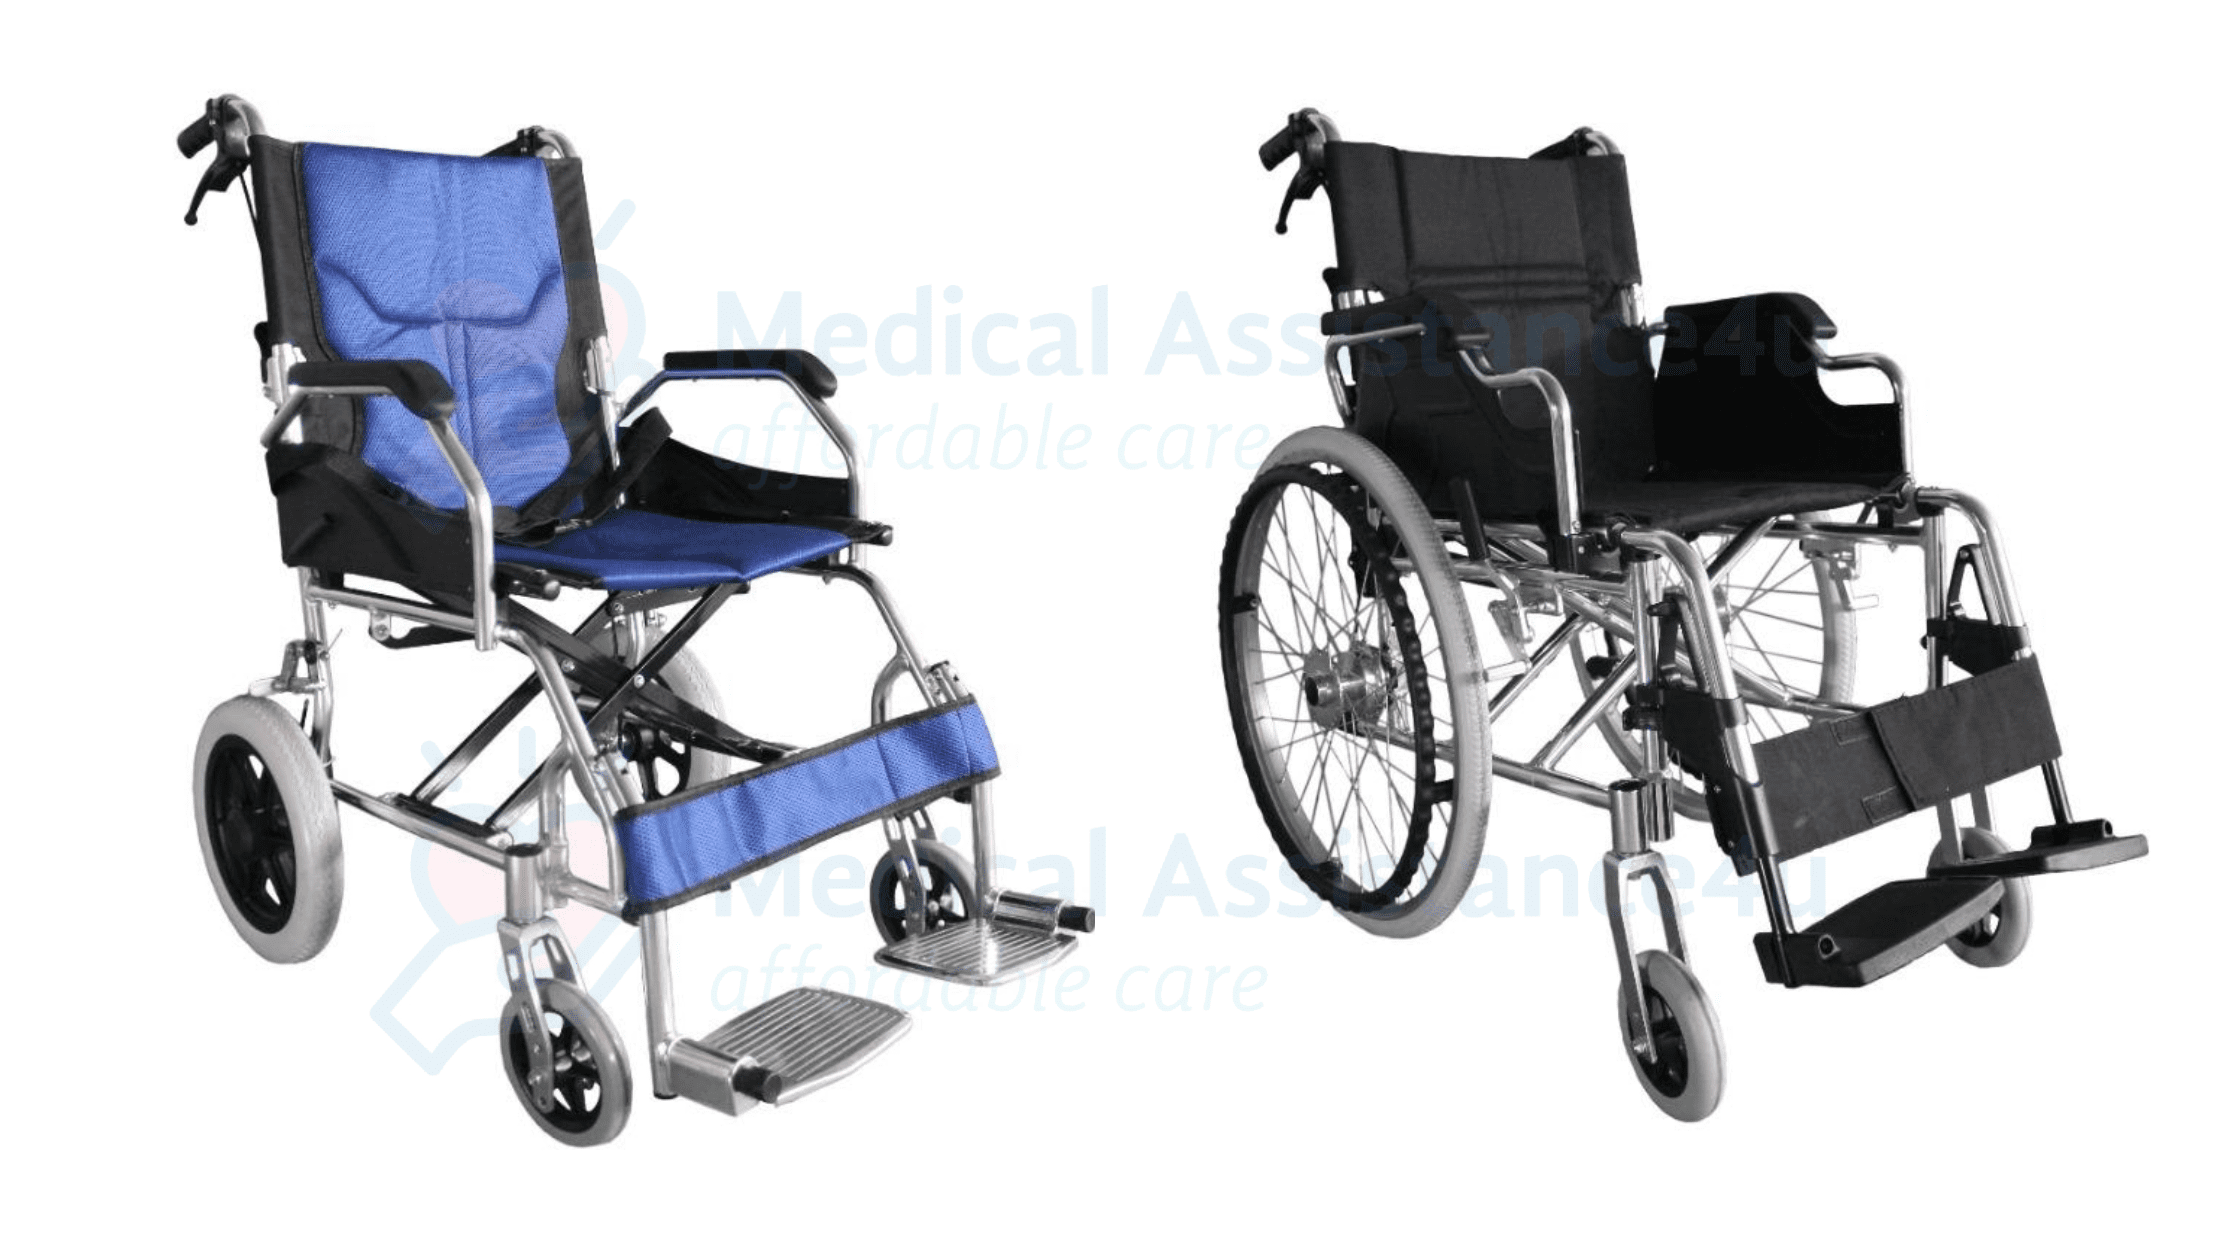 Wheelchairs vs pushchairs